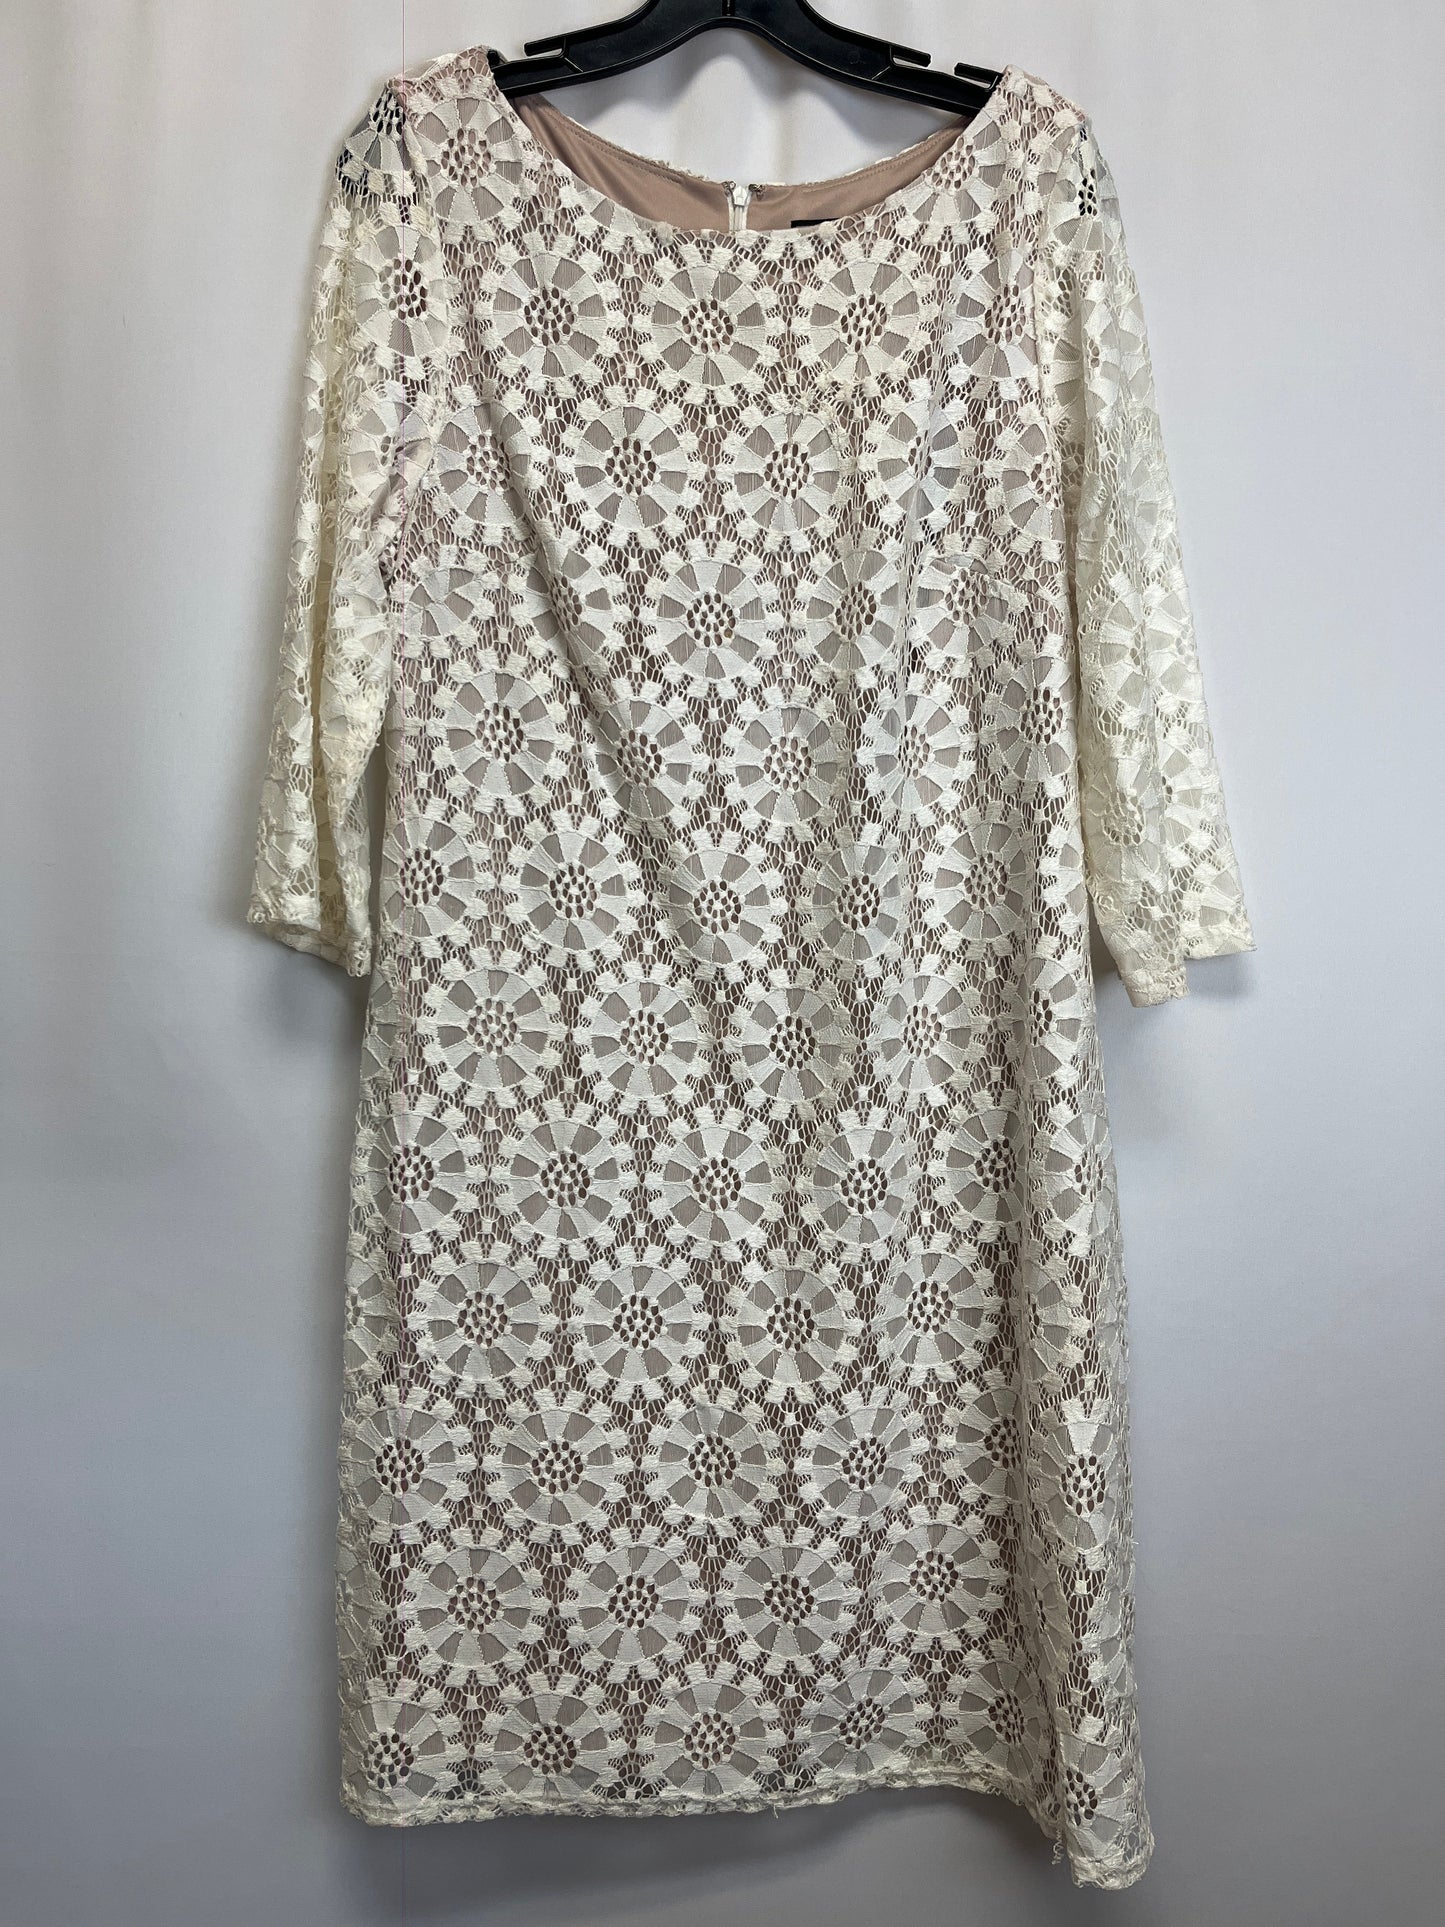 Dress Casual Midi By Jessica Howard  Size: Xl